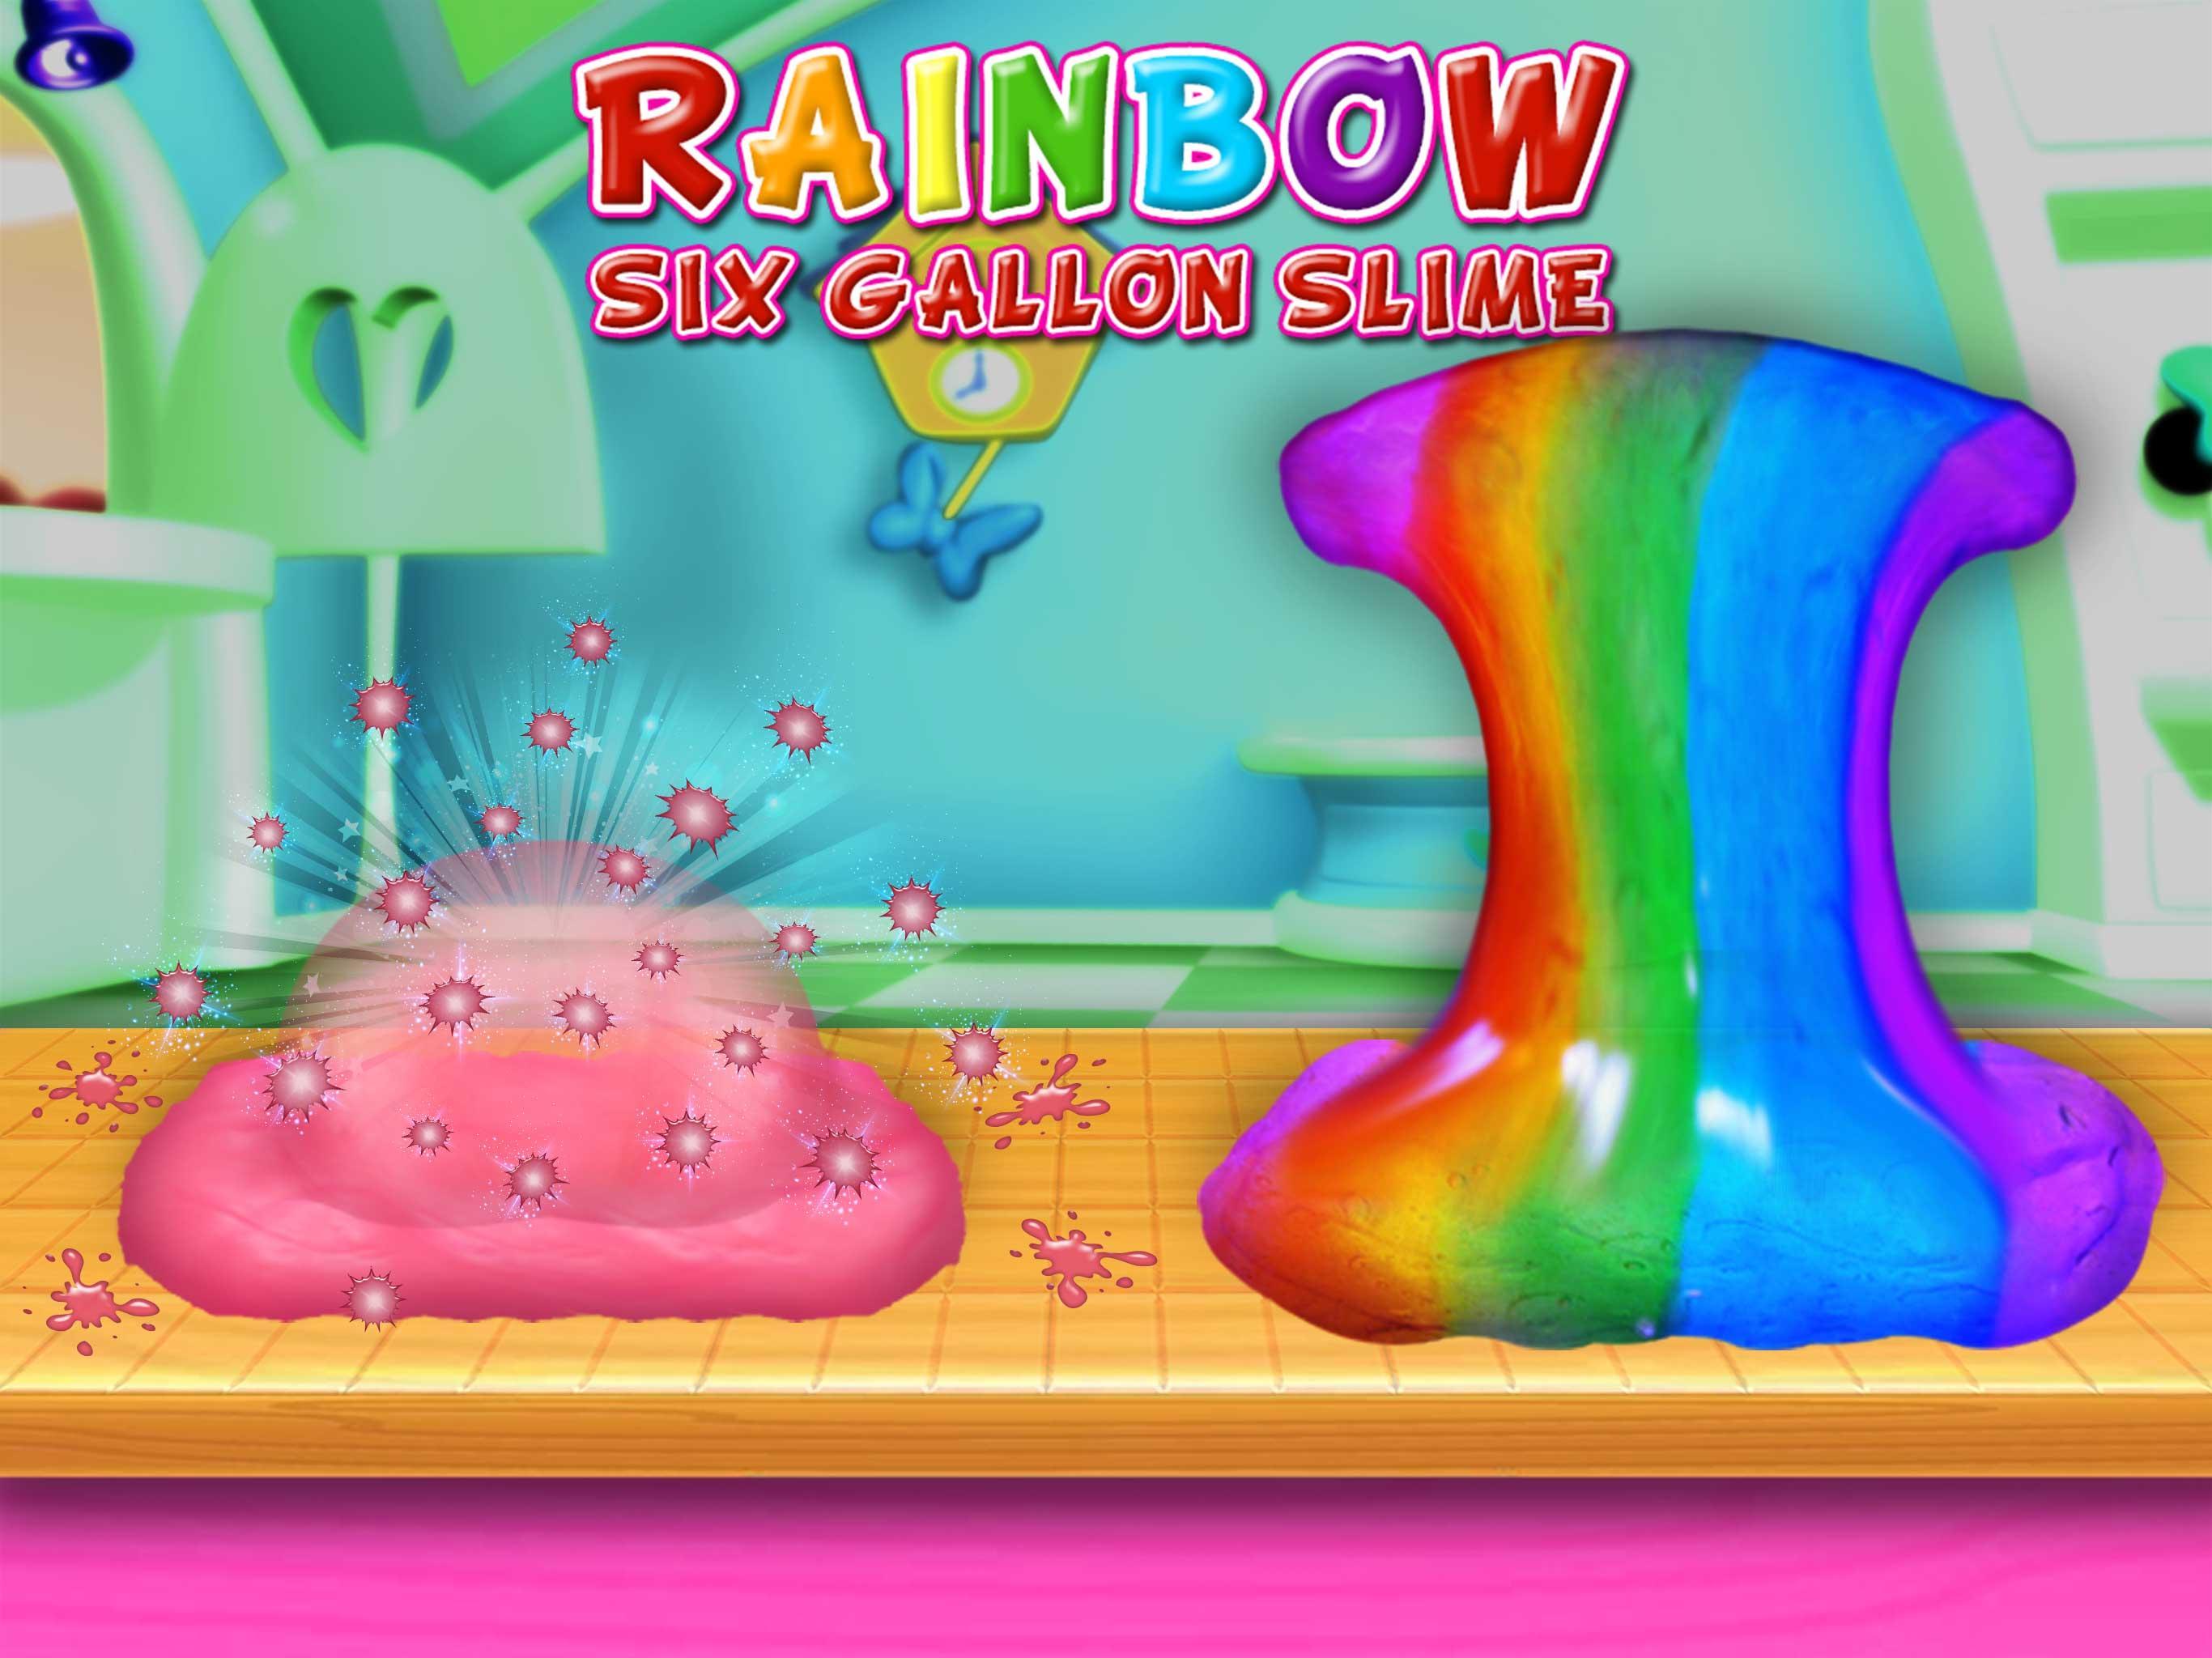 Screenshot 1 of Squishy arcobaleno slime glitterato da sei galloni 1.0